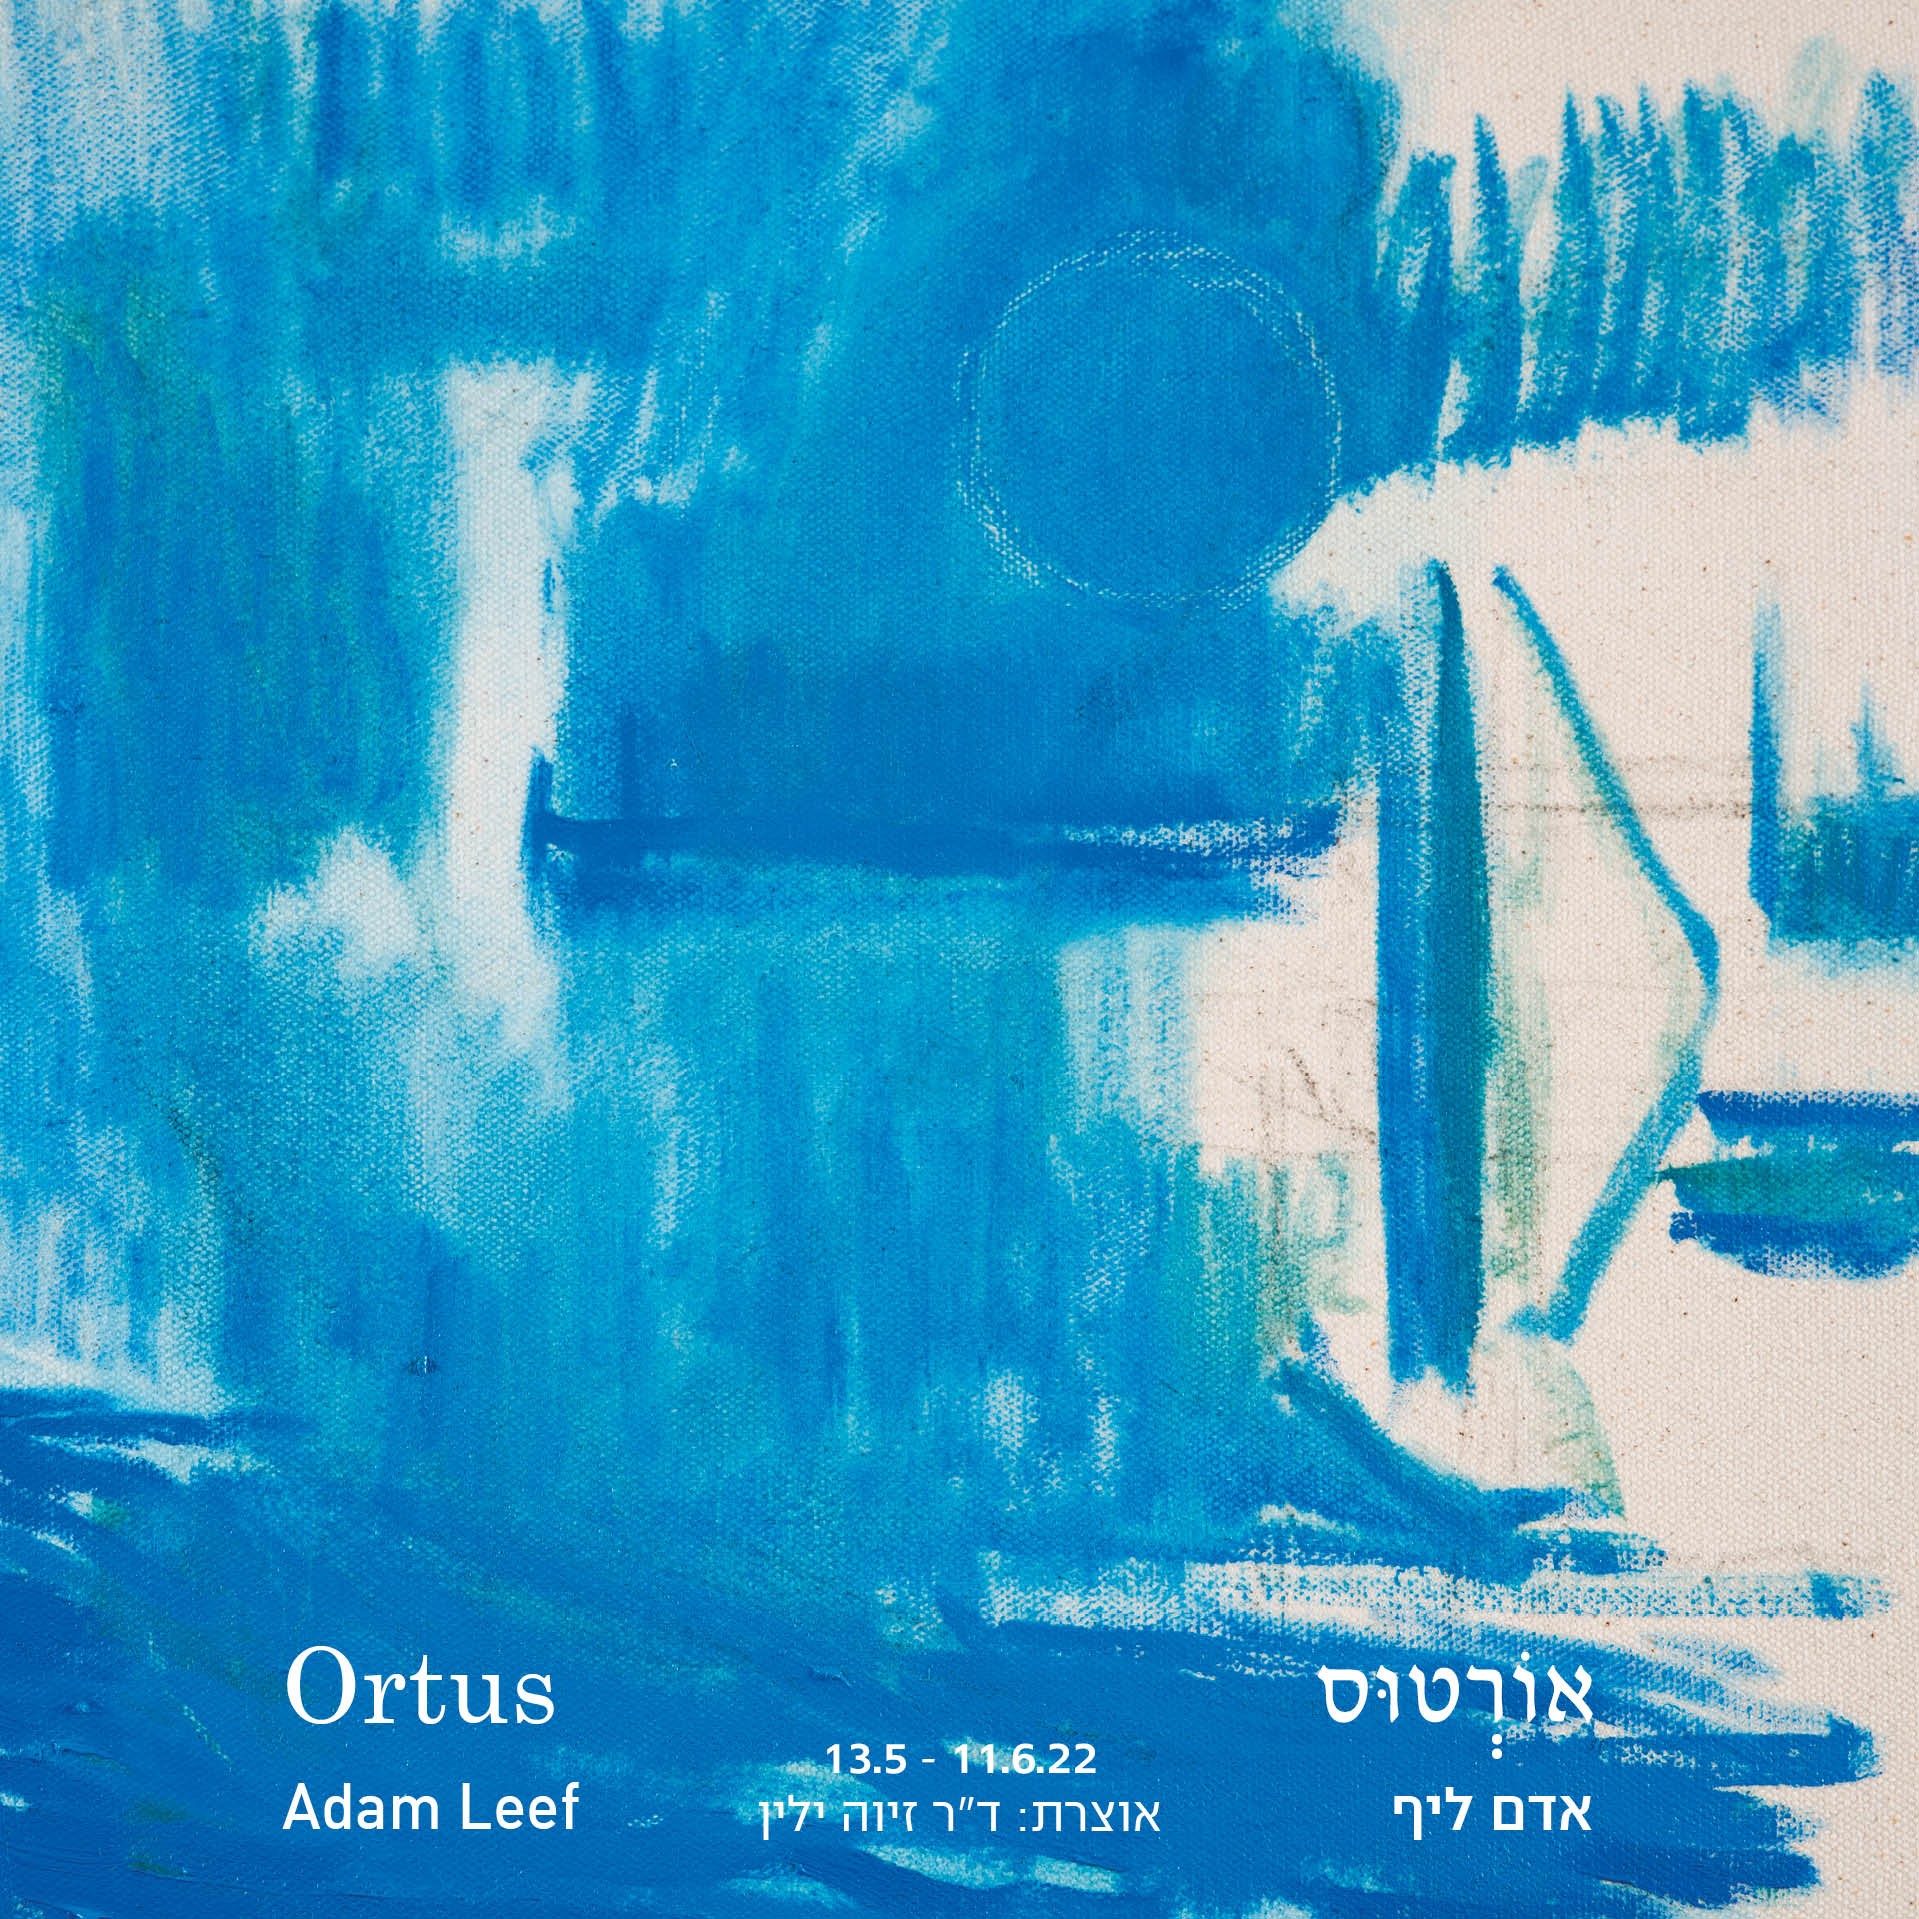 אורטוס (Ortus) - תערוכת יחיד לאדם ליף בגלריה בארי